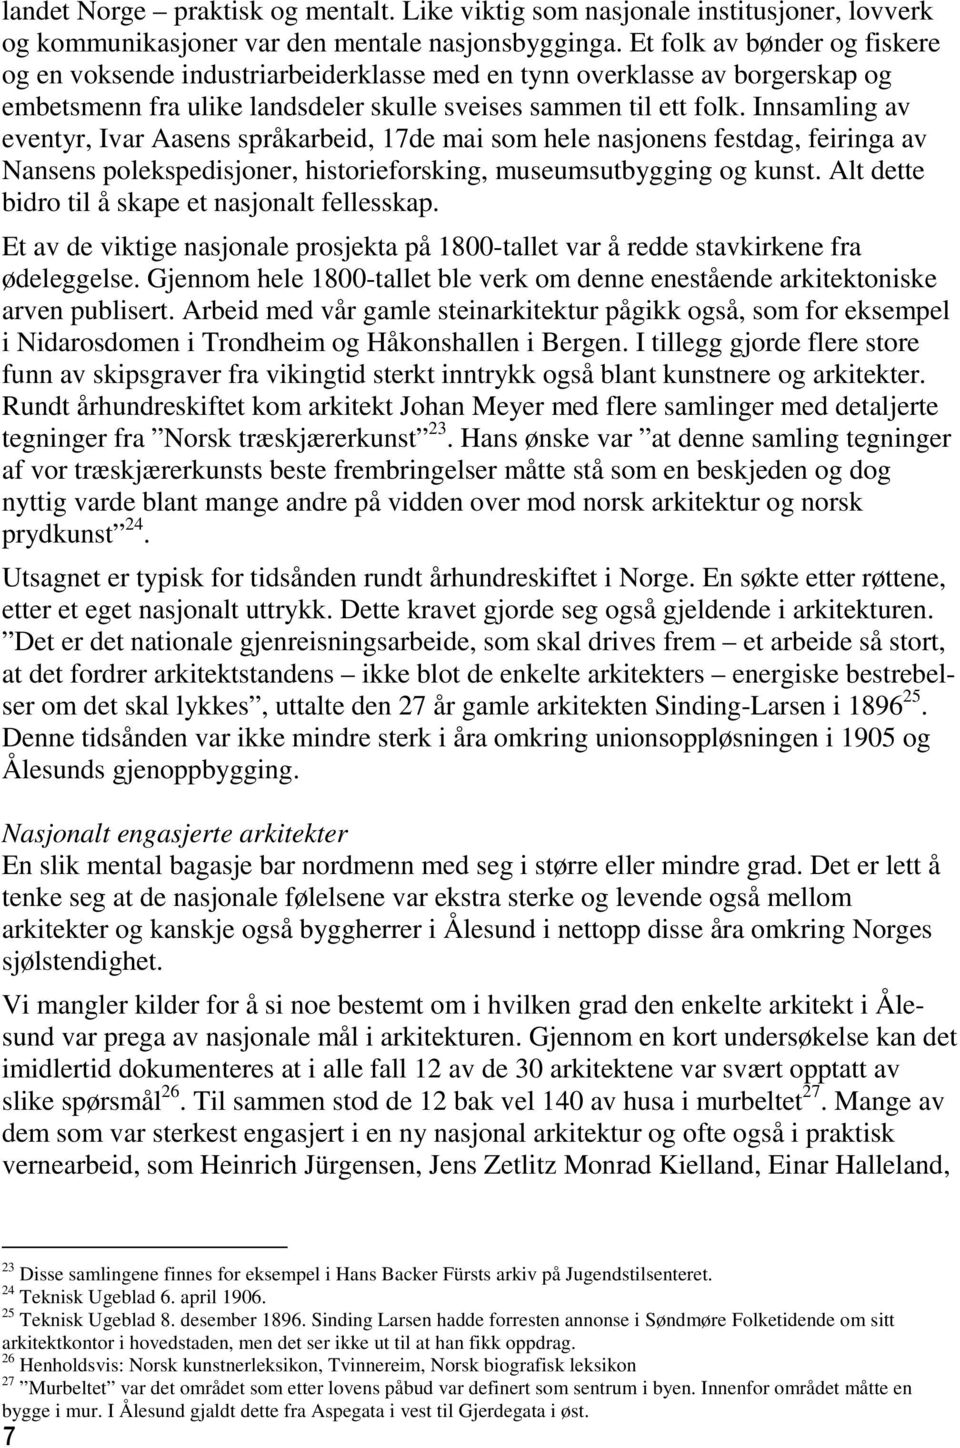 Innsamling av eventyr, Ivar Aasens språkarbeid, 17de mai som hele nasjonens festdag, feiringa av Nansens polekspedisjoner, historieforsking, museumsutbygging og kunst.